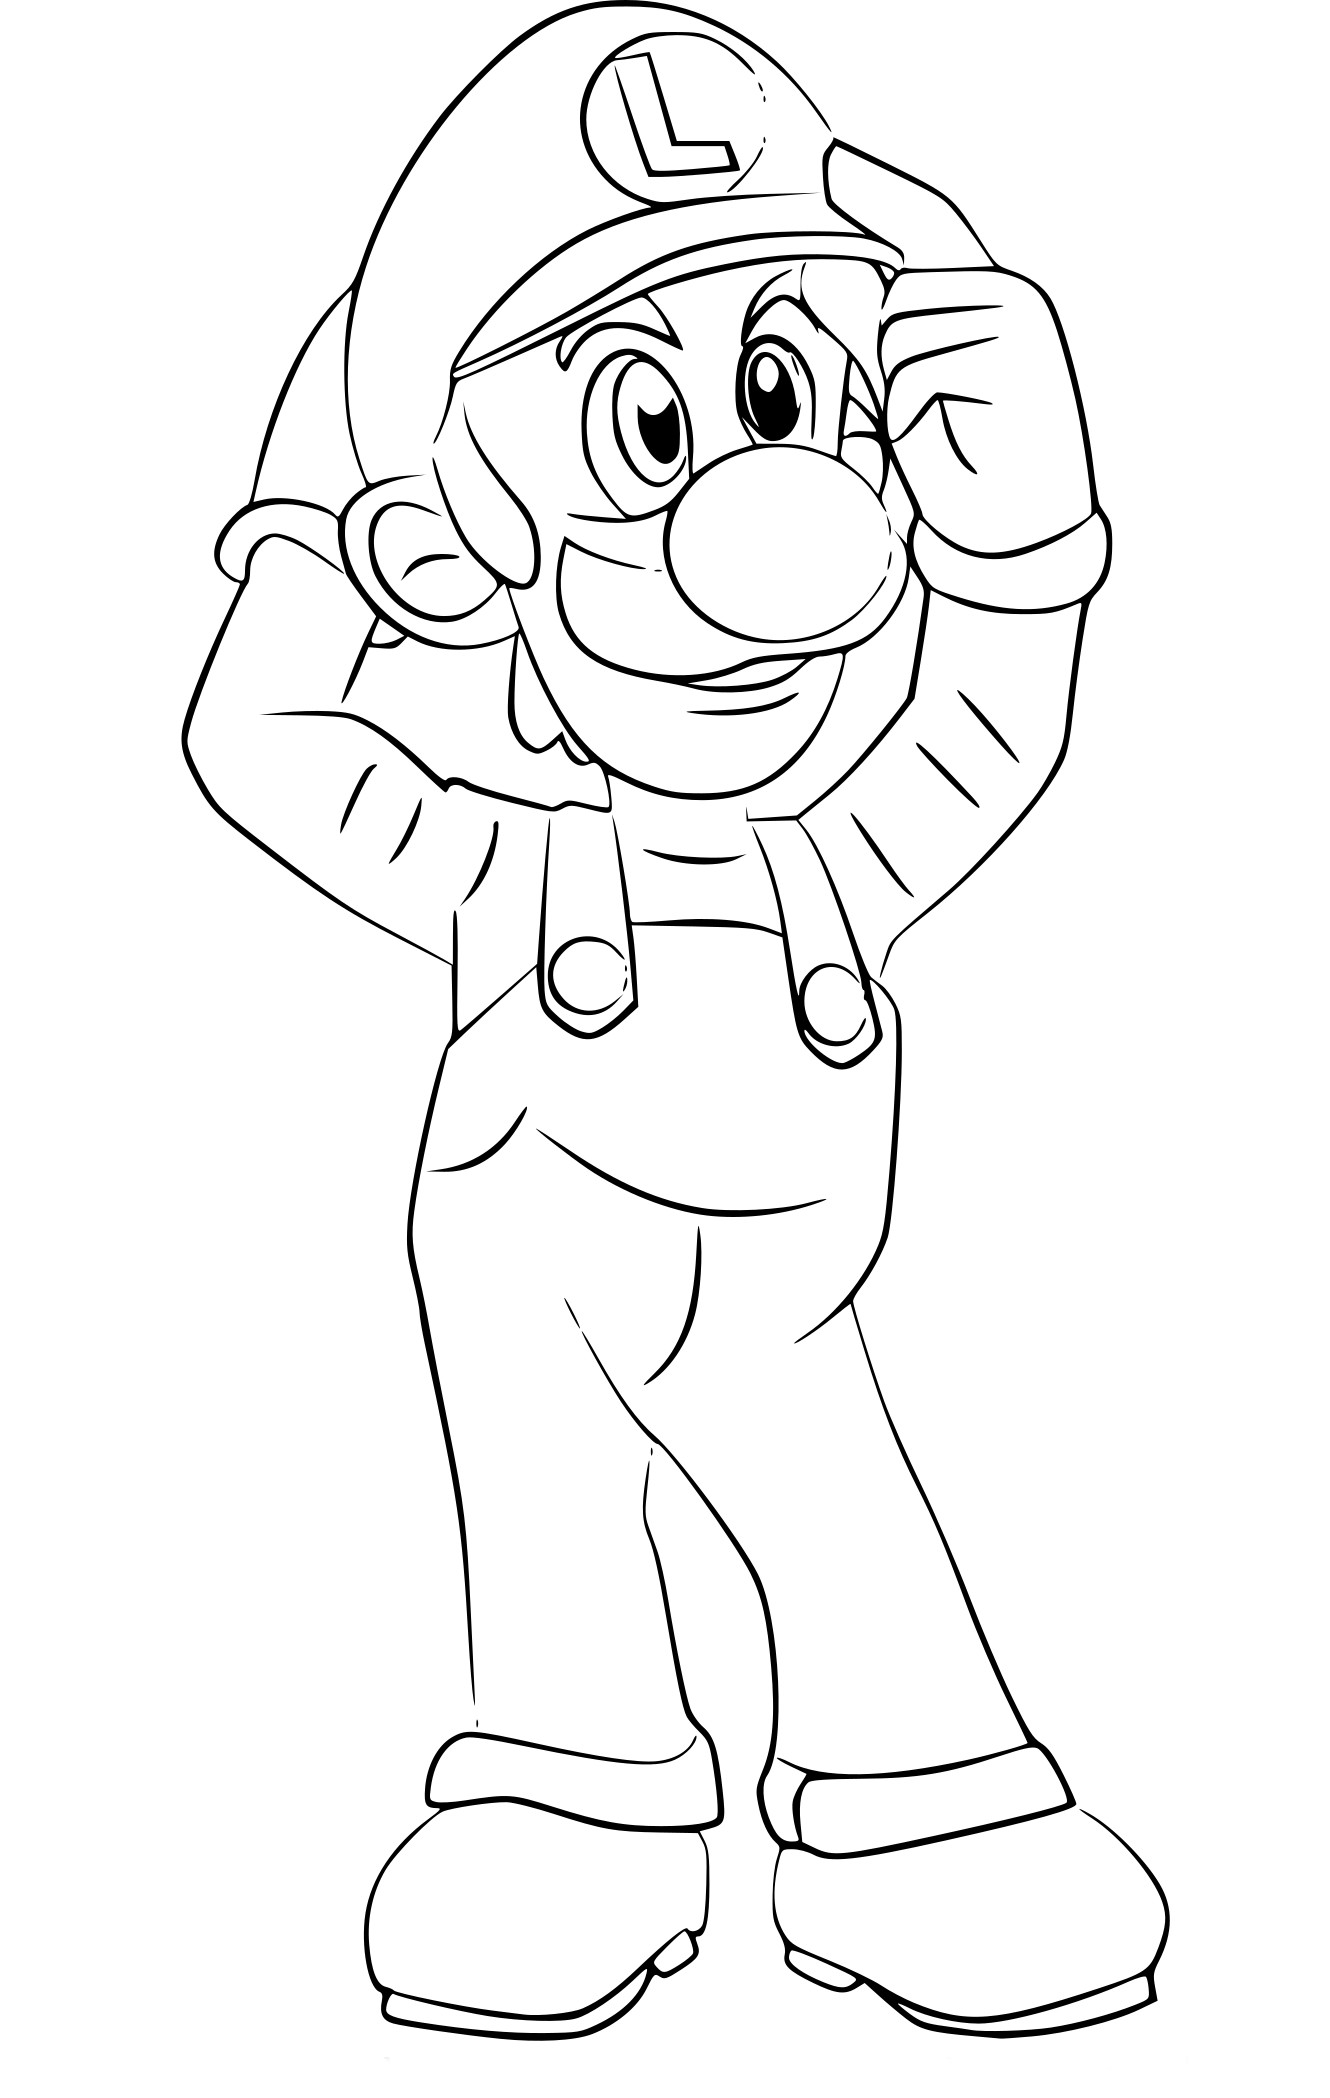 Luigi Super Smash Bros coloring page